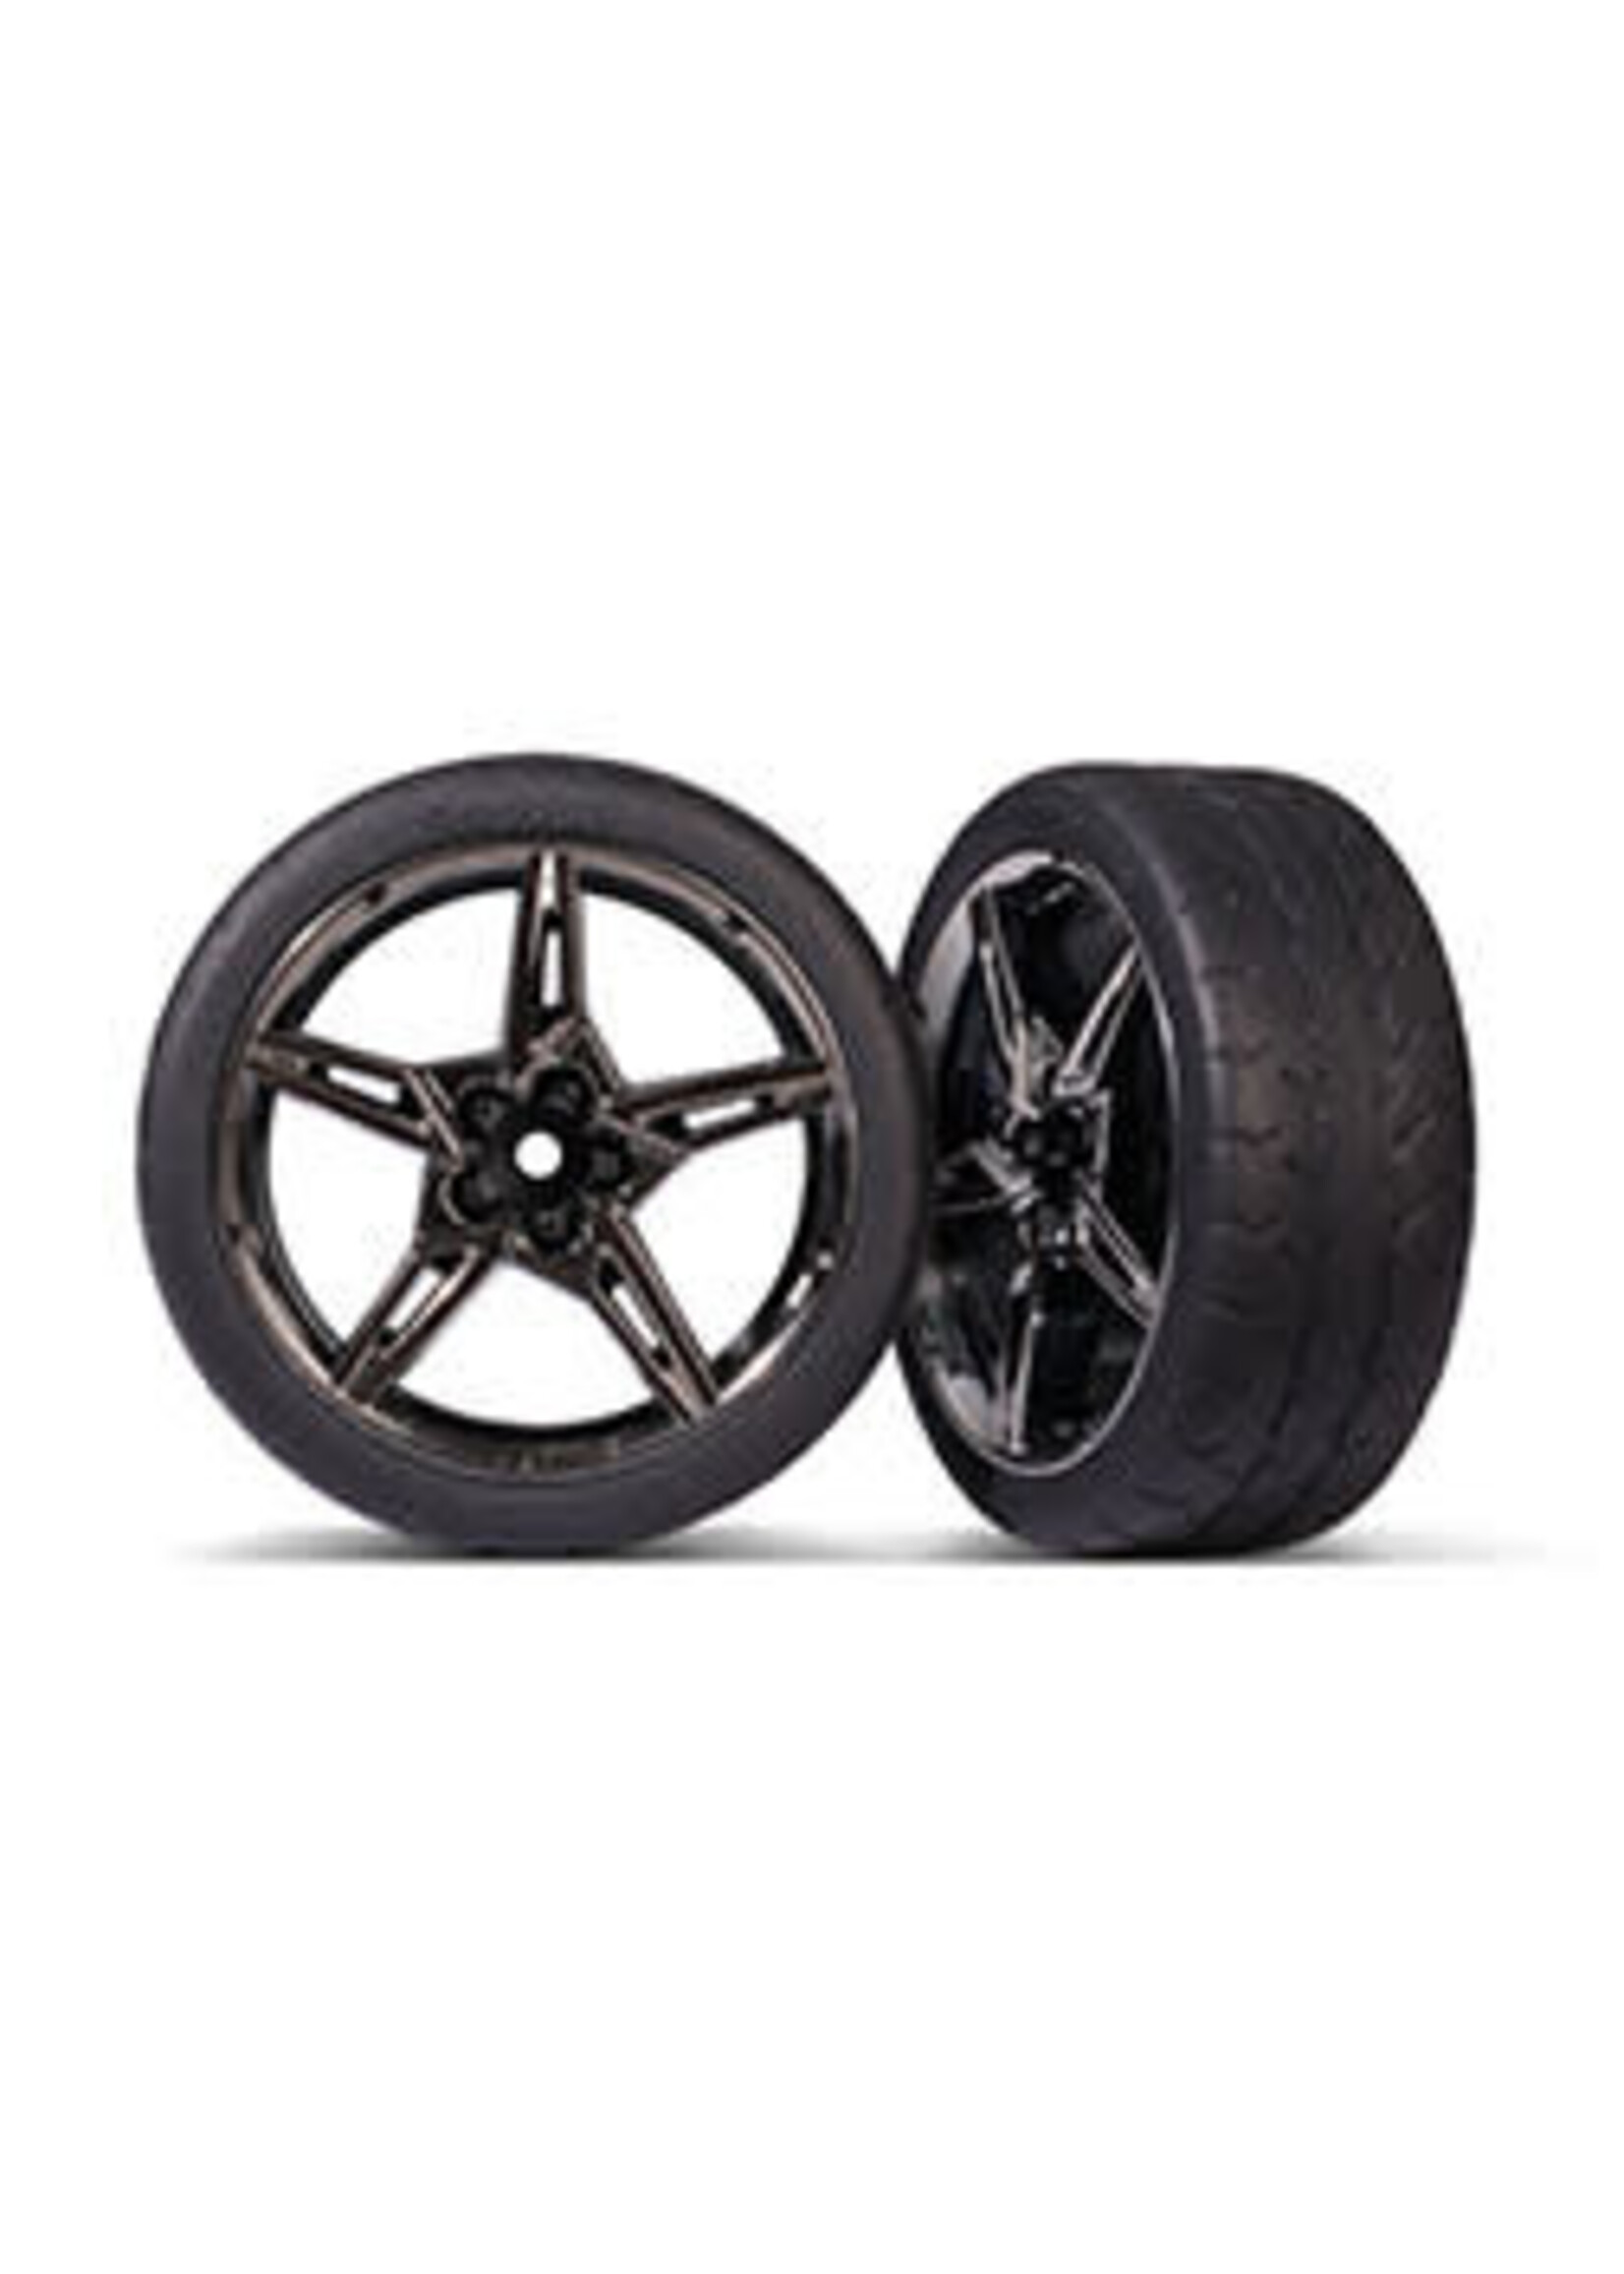 Traxxas 9370 Tires & wheels, assembled, glued (split-spoke black chrome wheels, 2.1" Response tires) (front) (2)